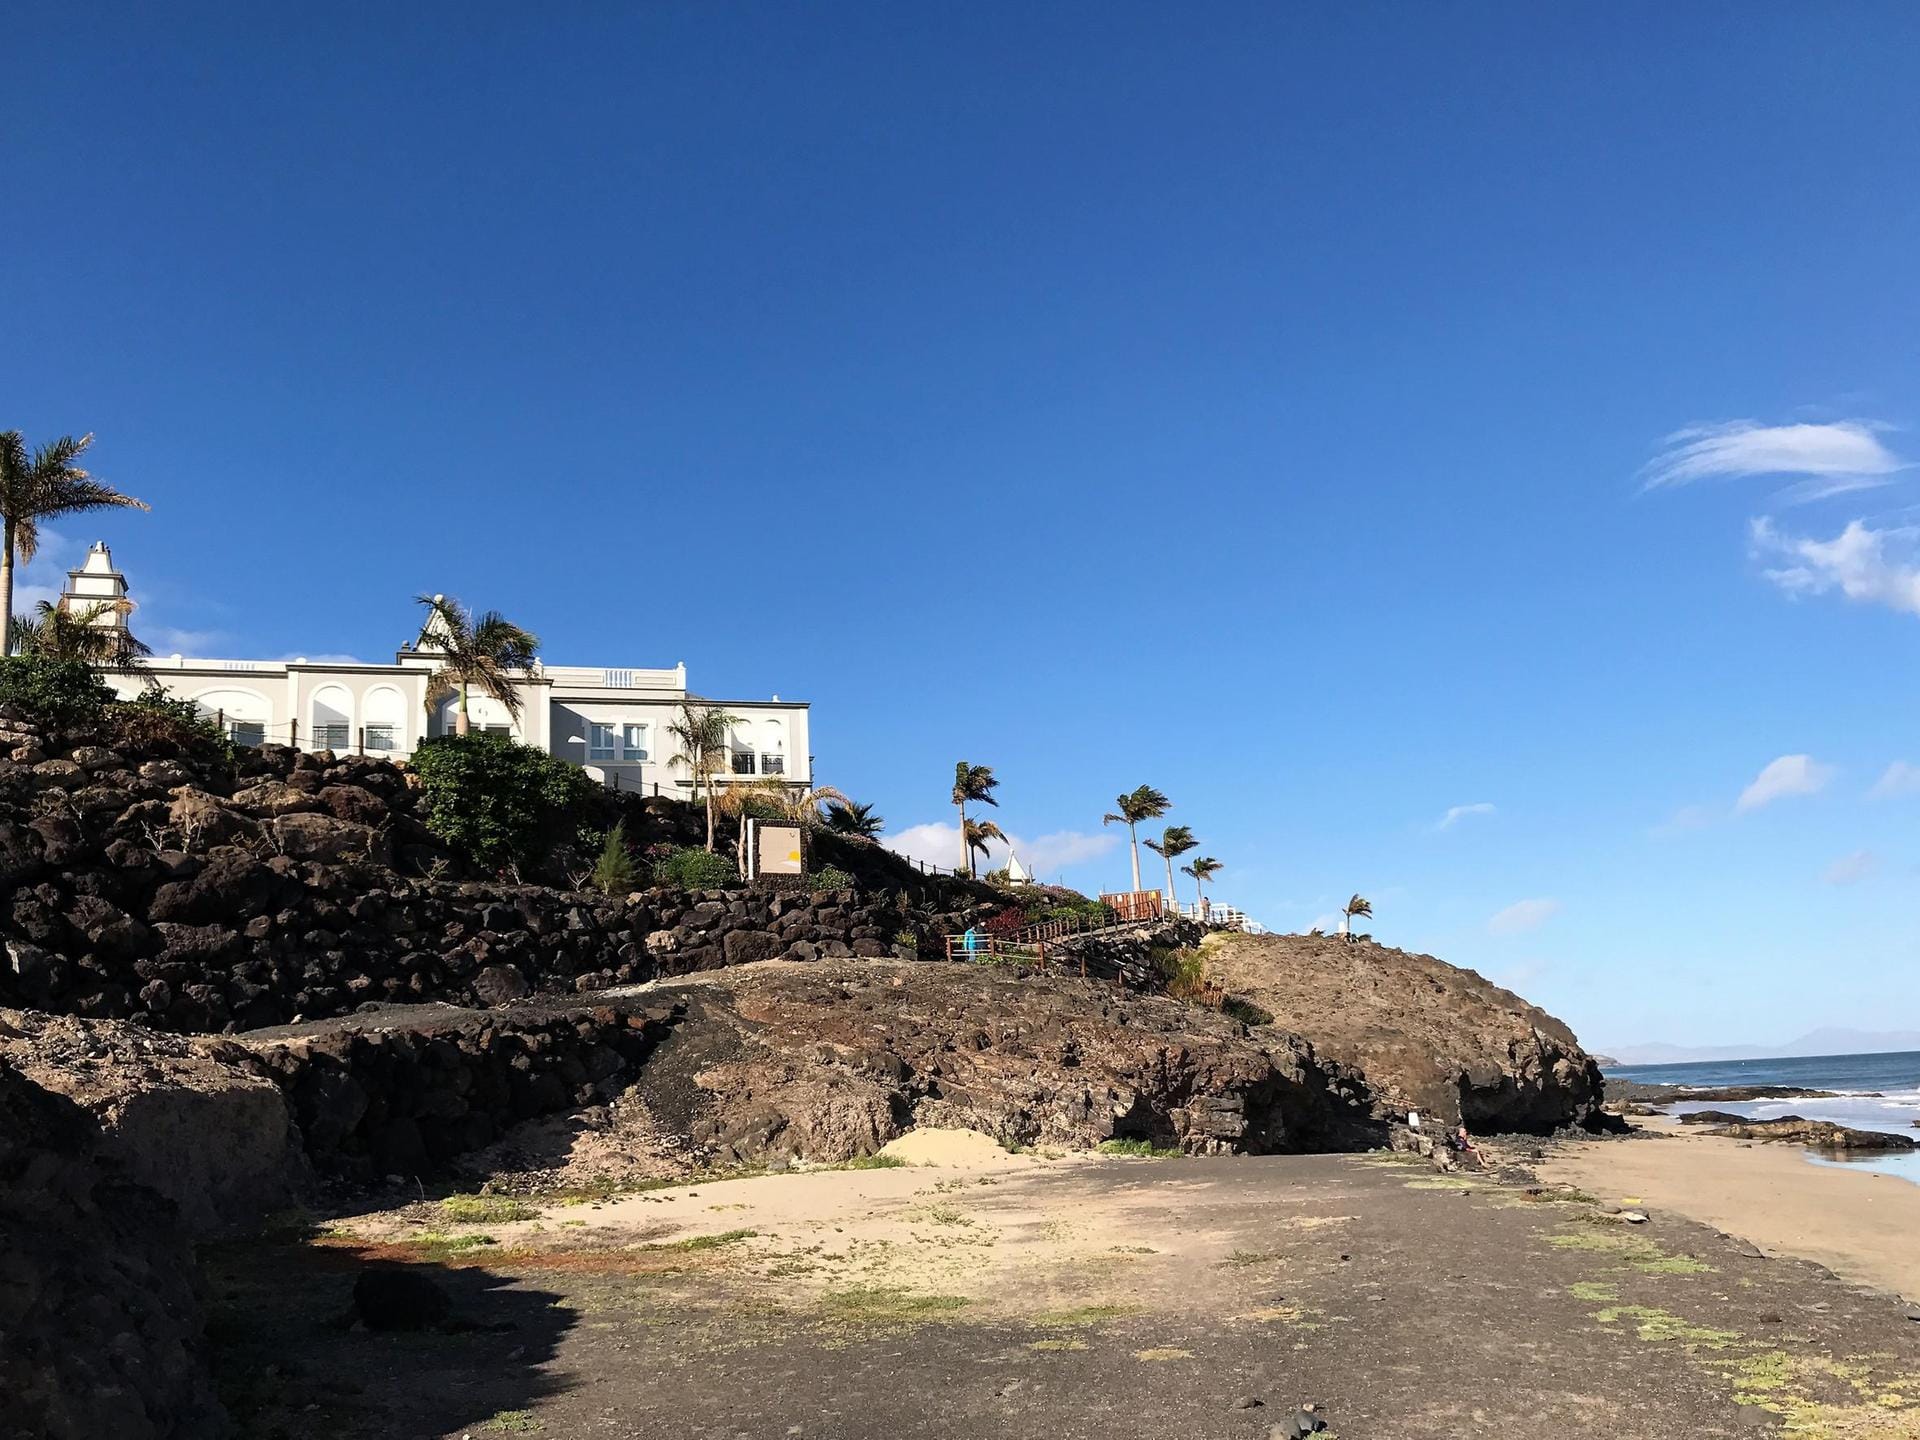 Das Sensimar Royal Palms auf Fuerteventura ist beispielgebend für solche Erwachsenenhotels.